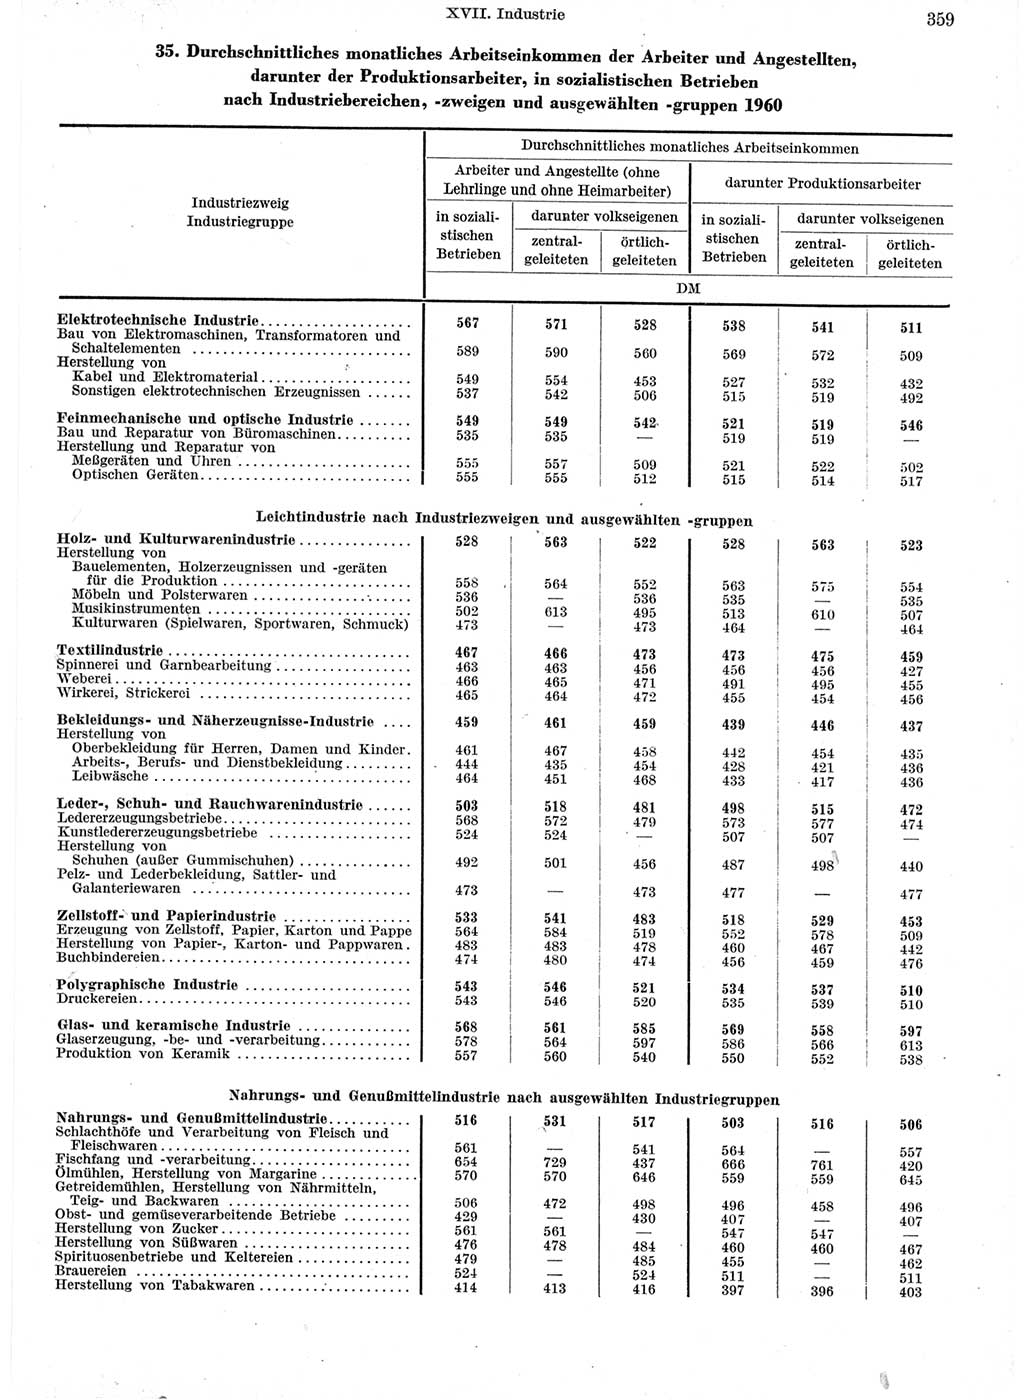 Statistisches Jahrbuch der Deutschen Demokratischen Republik (DDR) 1960-1961, Seite 359 (Stat. Jb. DDR 1960-1961, S. 359)